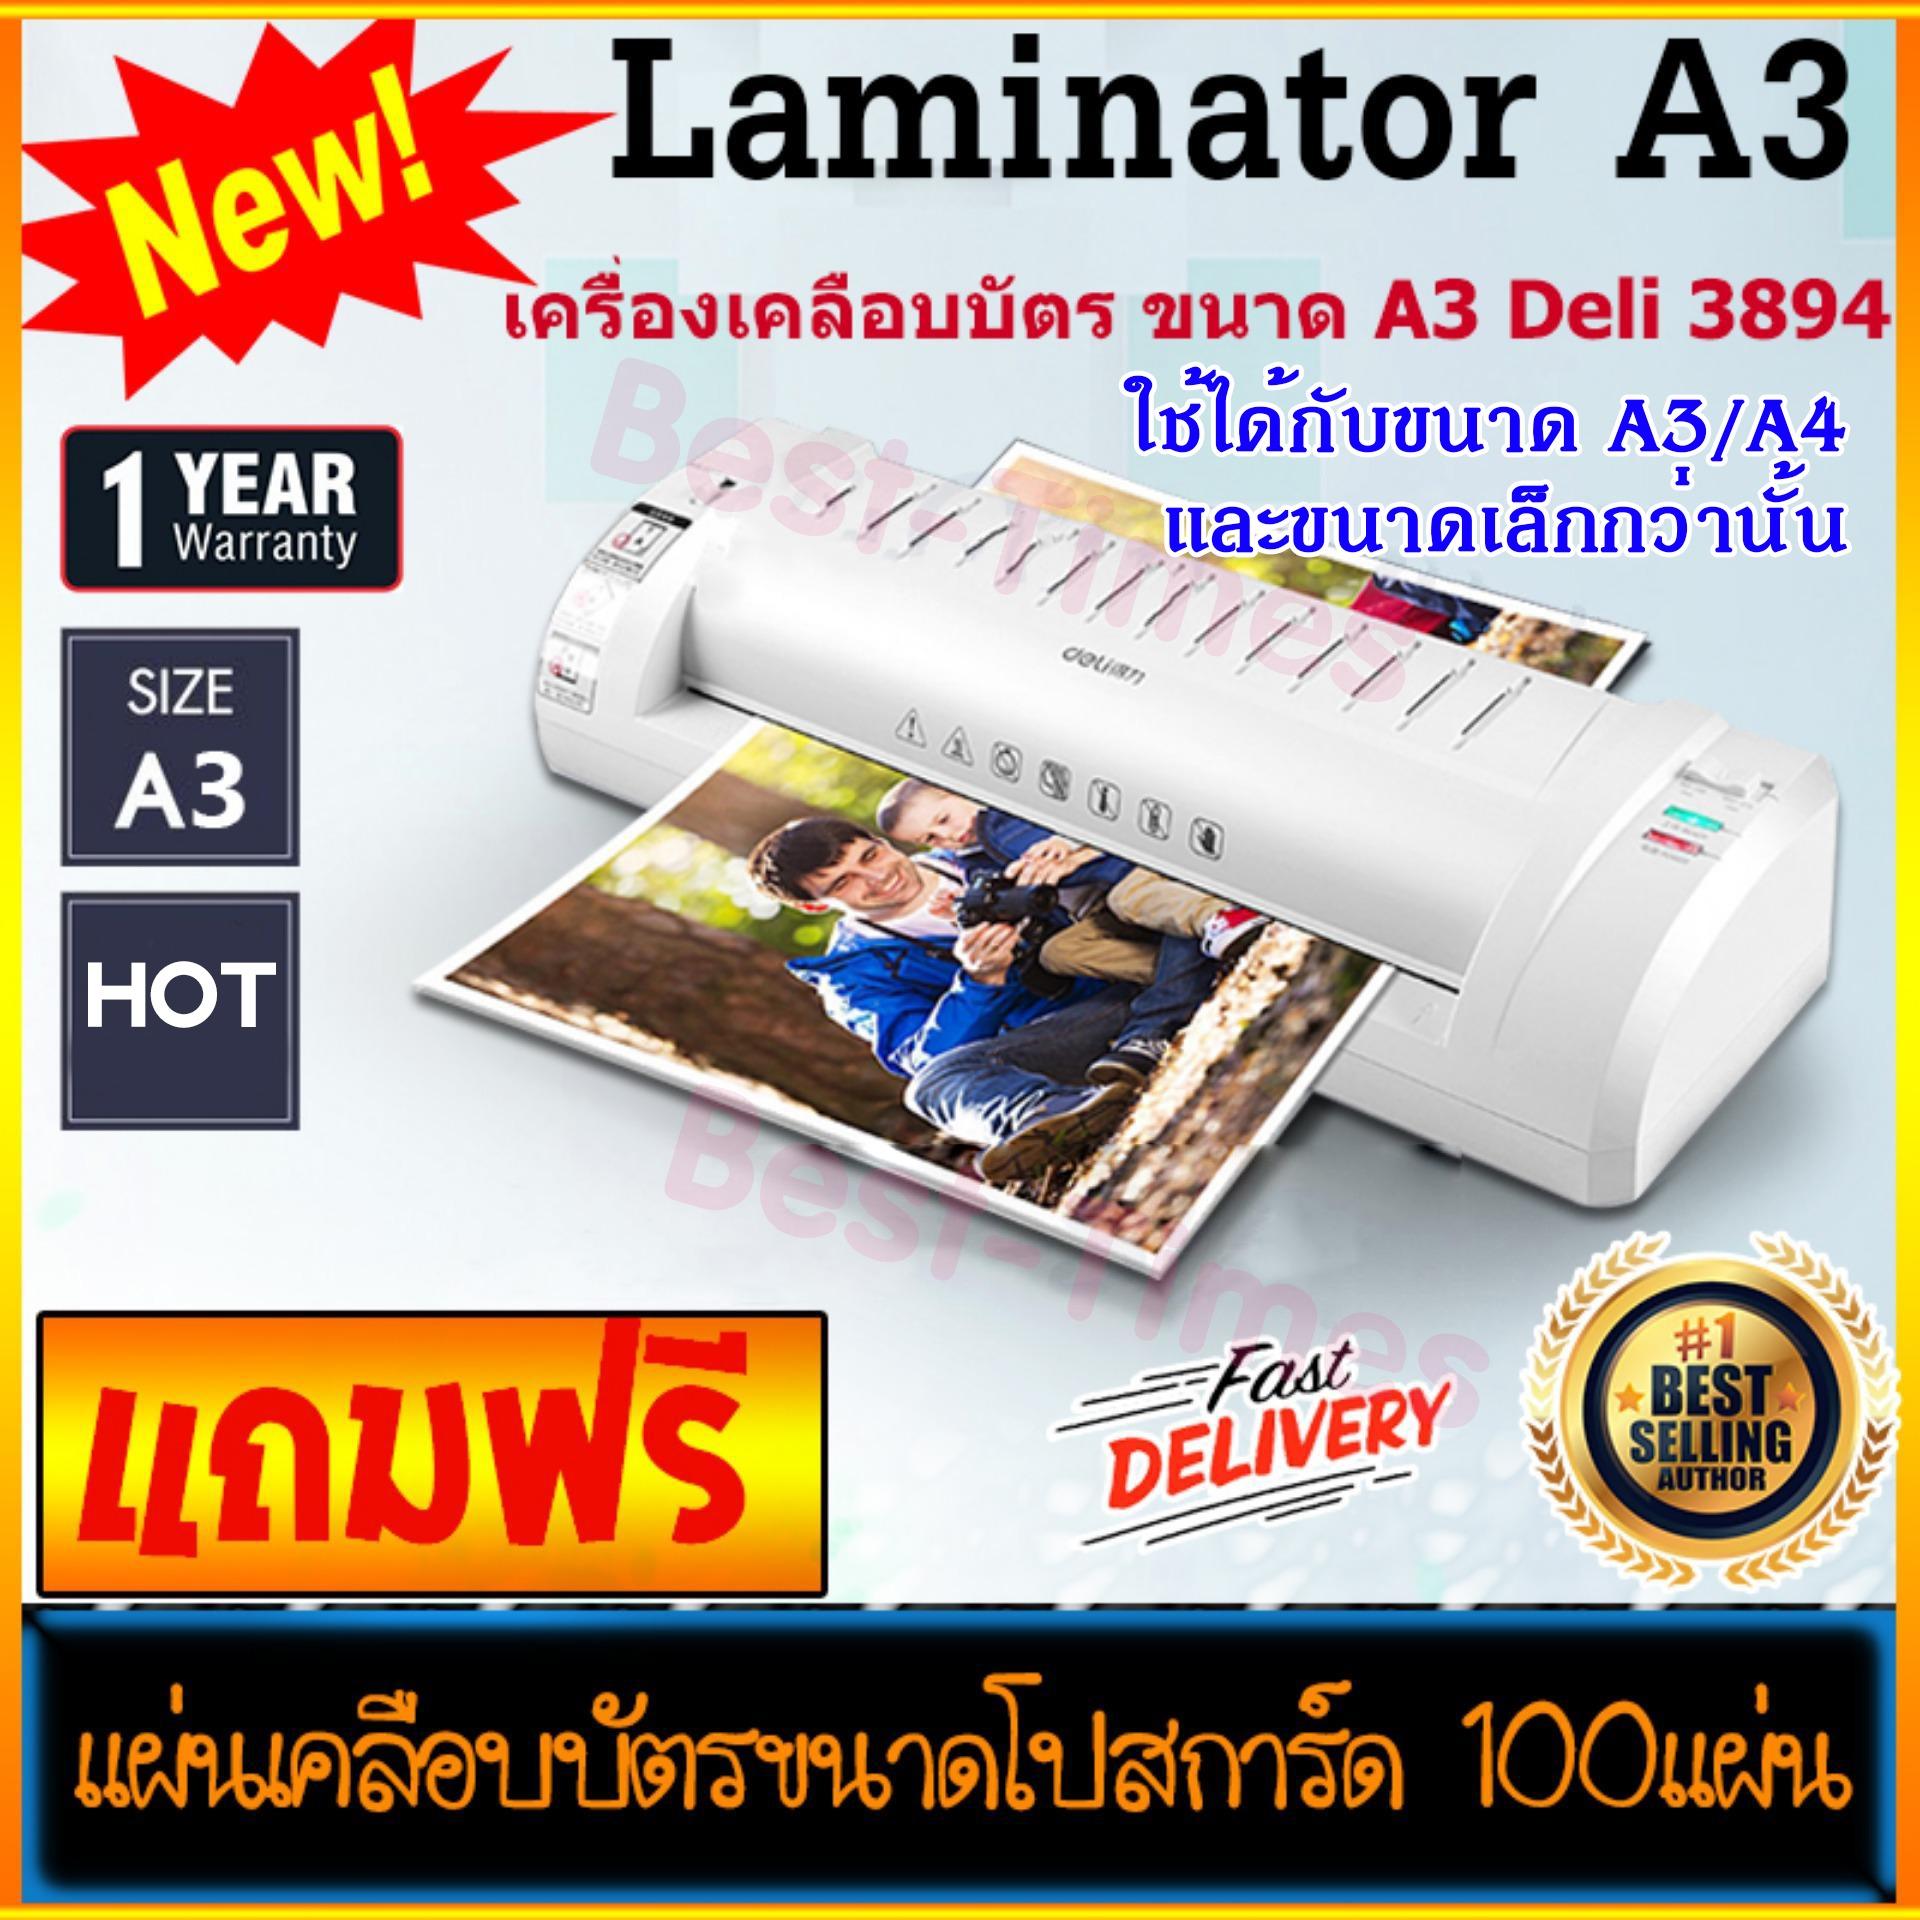 เครื่องเคลือบบัตร Laminator A3/A4 **รุ่นใหม่** Deli 3894 เคลือบเรียบ ใช้ง่าย อุปกรณ์สำนักงาน สำหรับร้านถ่ายเอกสาร ฟรี!!แผ่นเคลือบบัตร (พลาสติกเคลือบบัตร 16x11ซม.) 100 แผ่น Laminating Machine (A3/A4) เครื่องพิมพ์ Free!! Laminating Pouches 100-Sheet